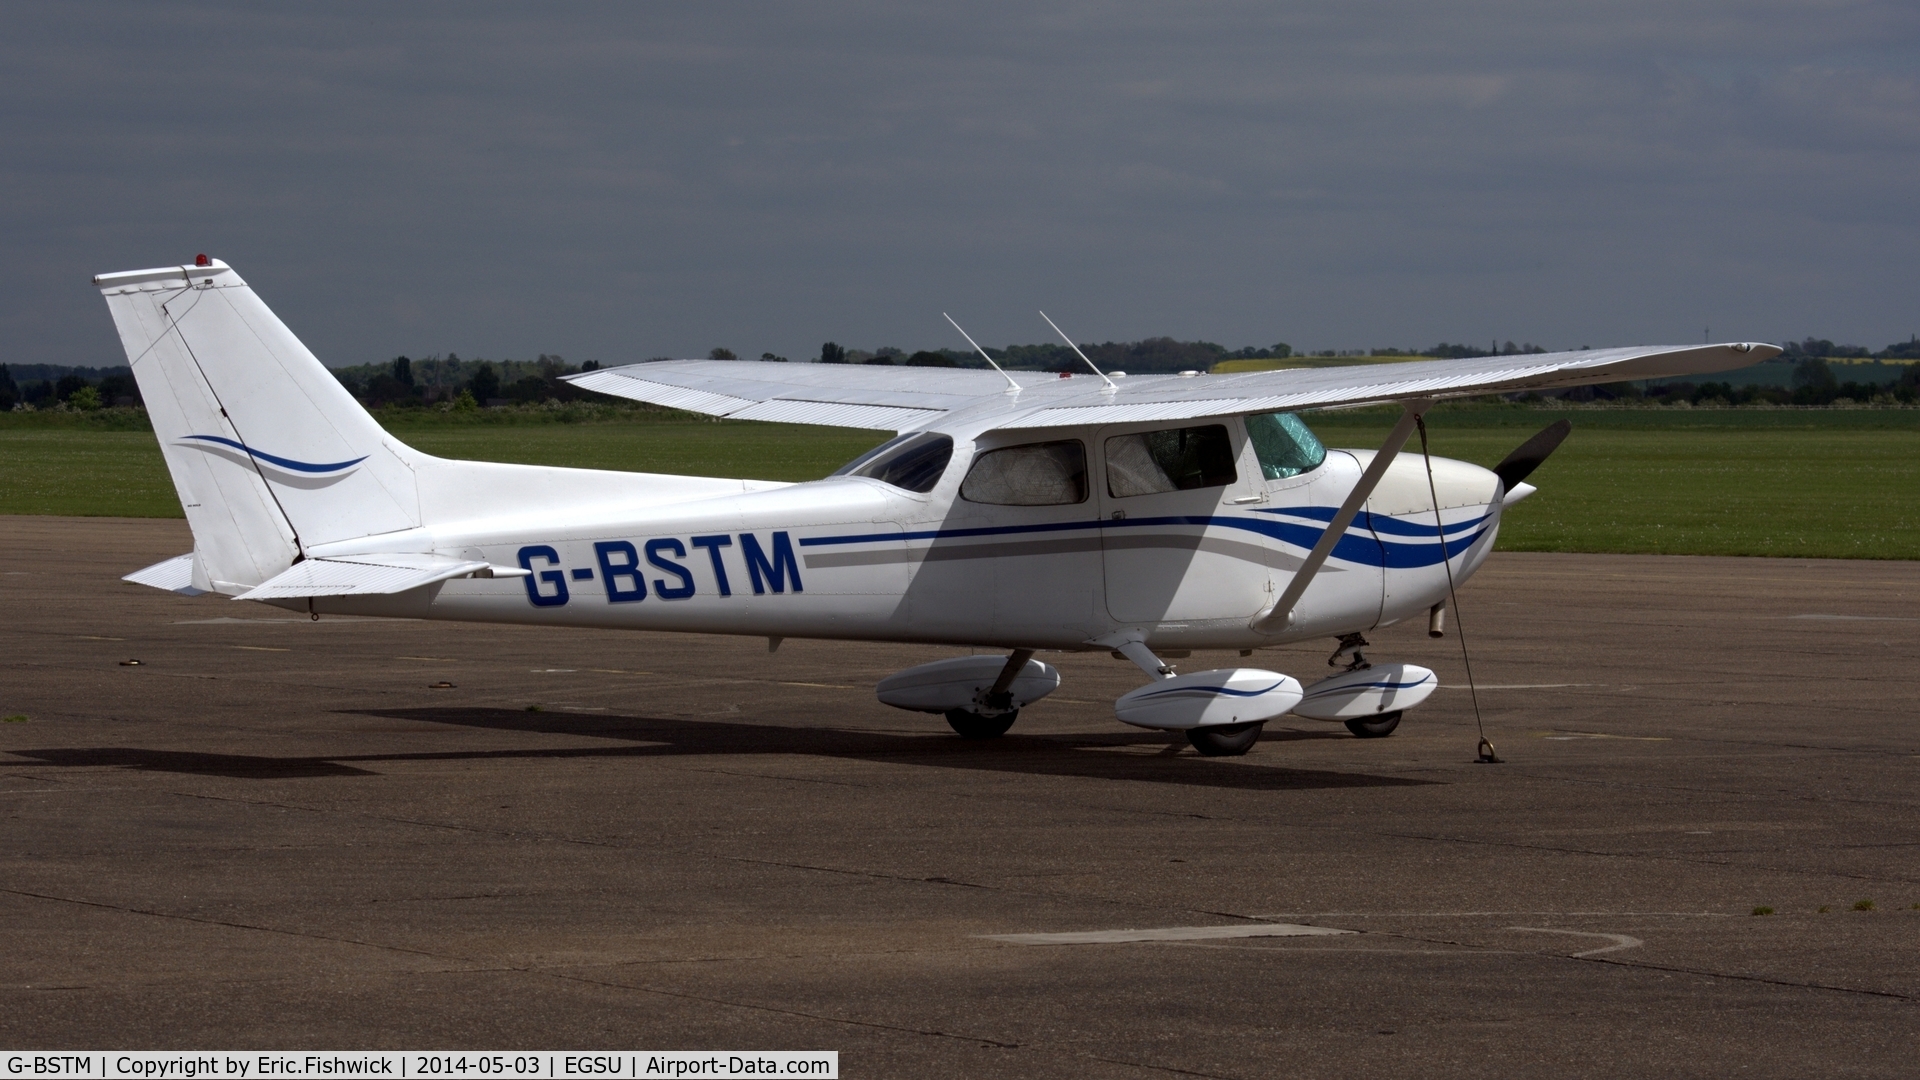 G-BSTM, 1972 Cessna 172L C/N 172-60143, 2. G-BSTM at Duxford Airfield.